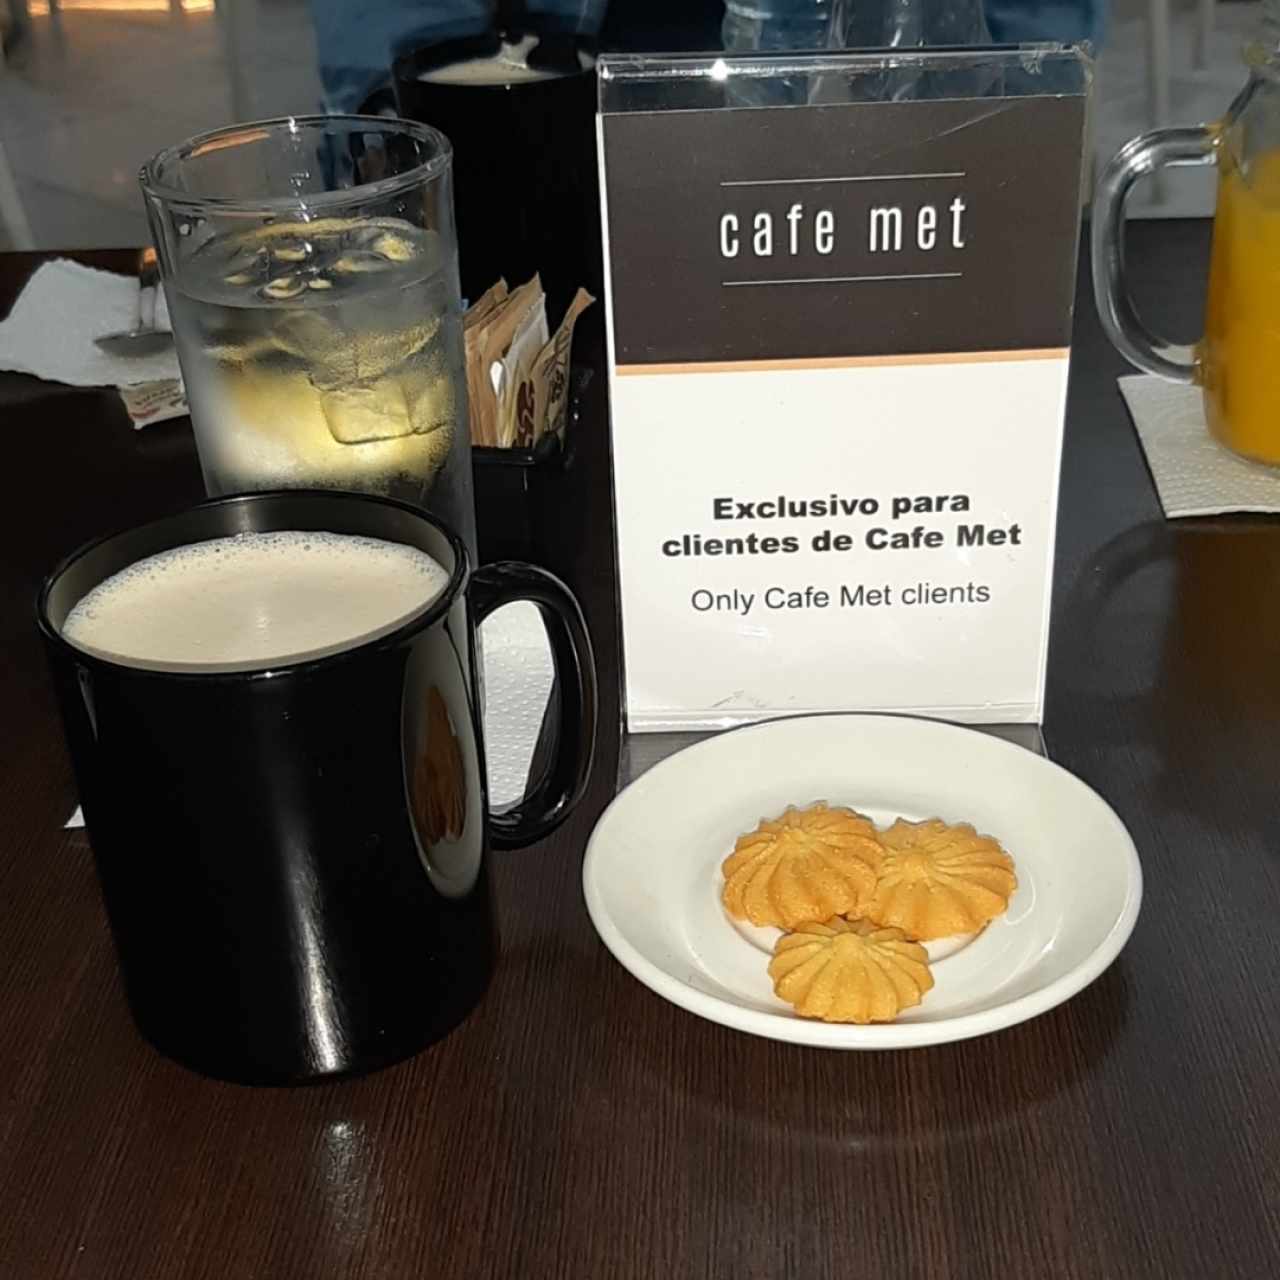 Cafe Latte acompañado con galletas